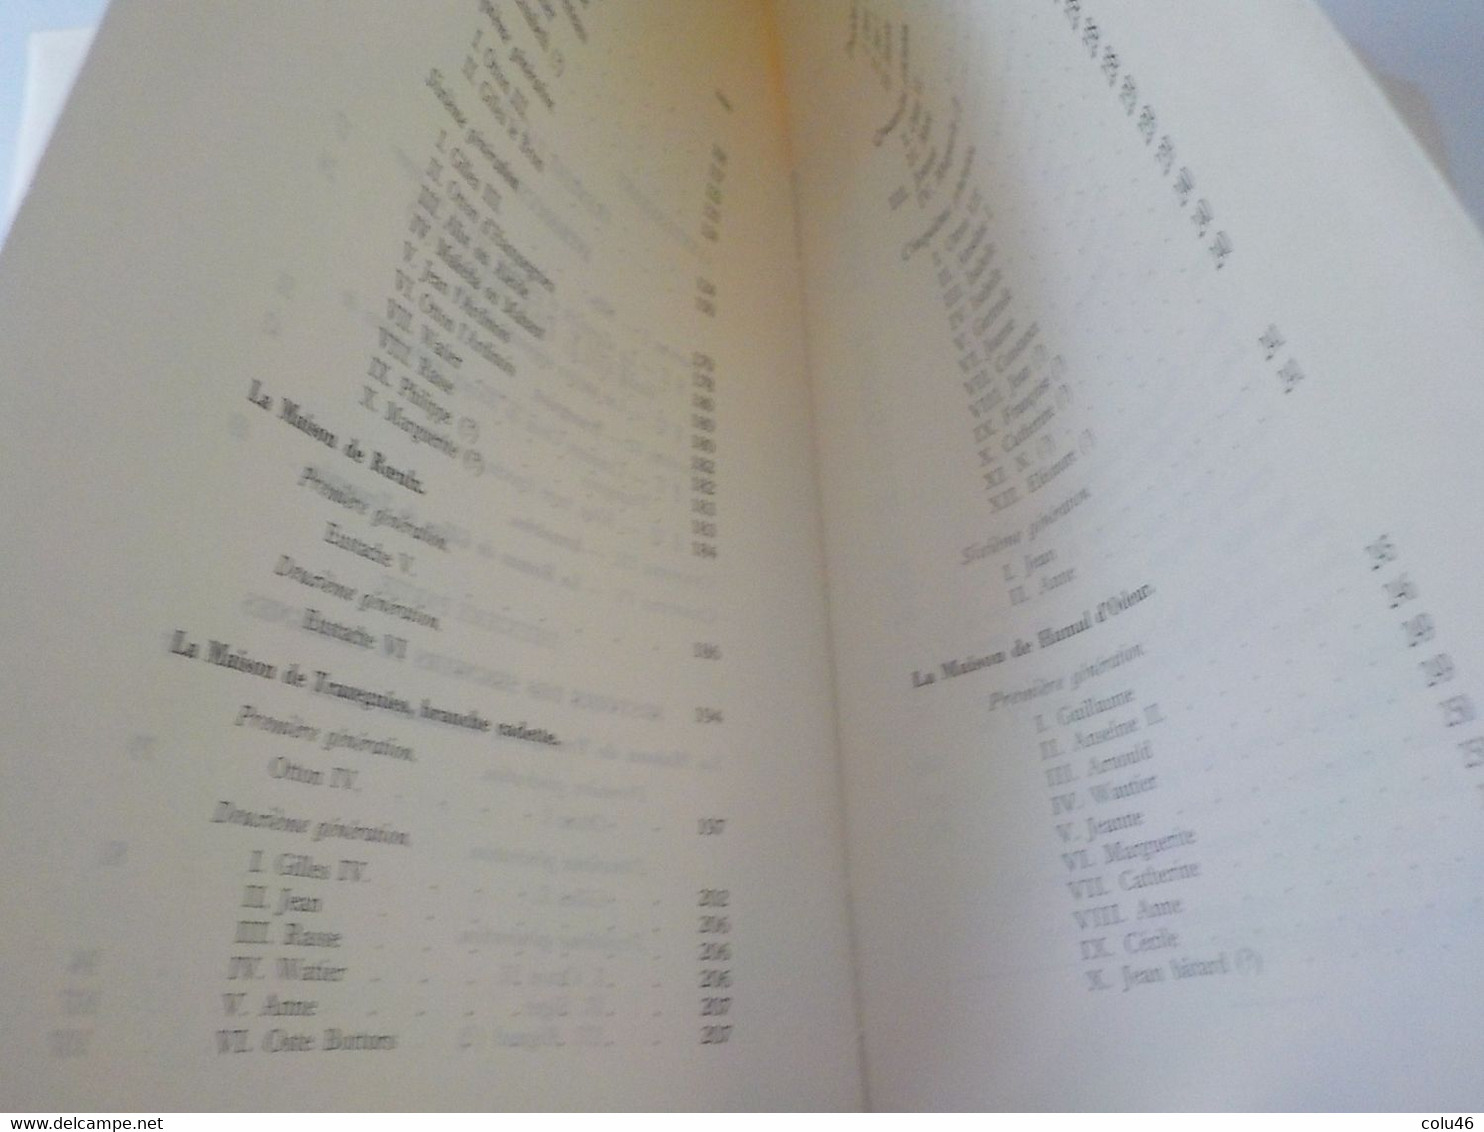 1959 Courcelles livre Les Seigneurs de Trazegnies au Moyen-Age + arbres généalogiques Curé Mont-Sainte Geneviève